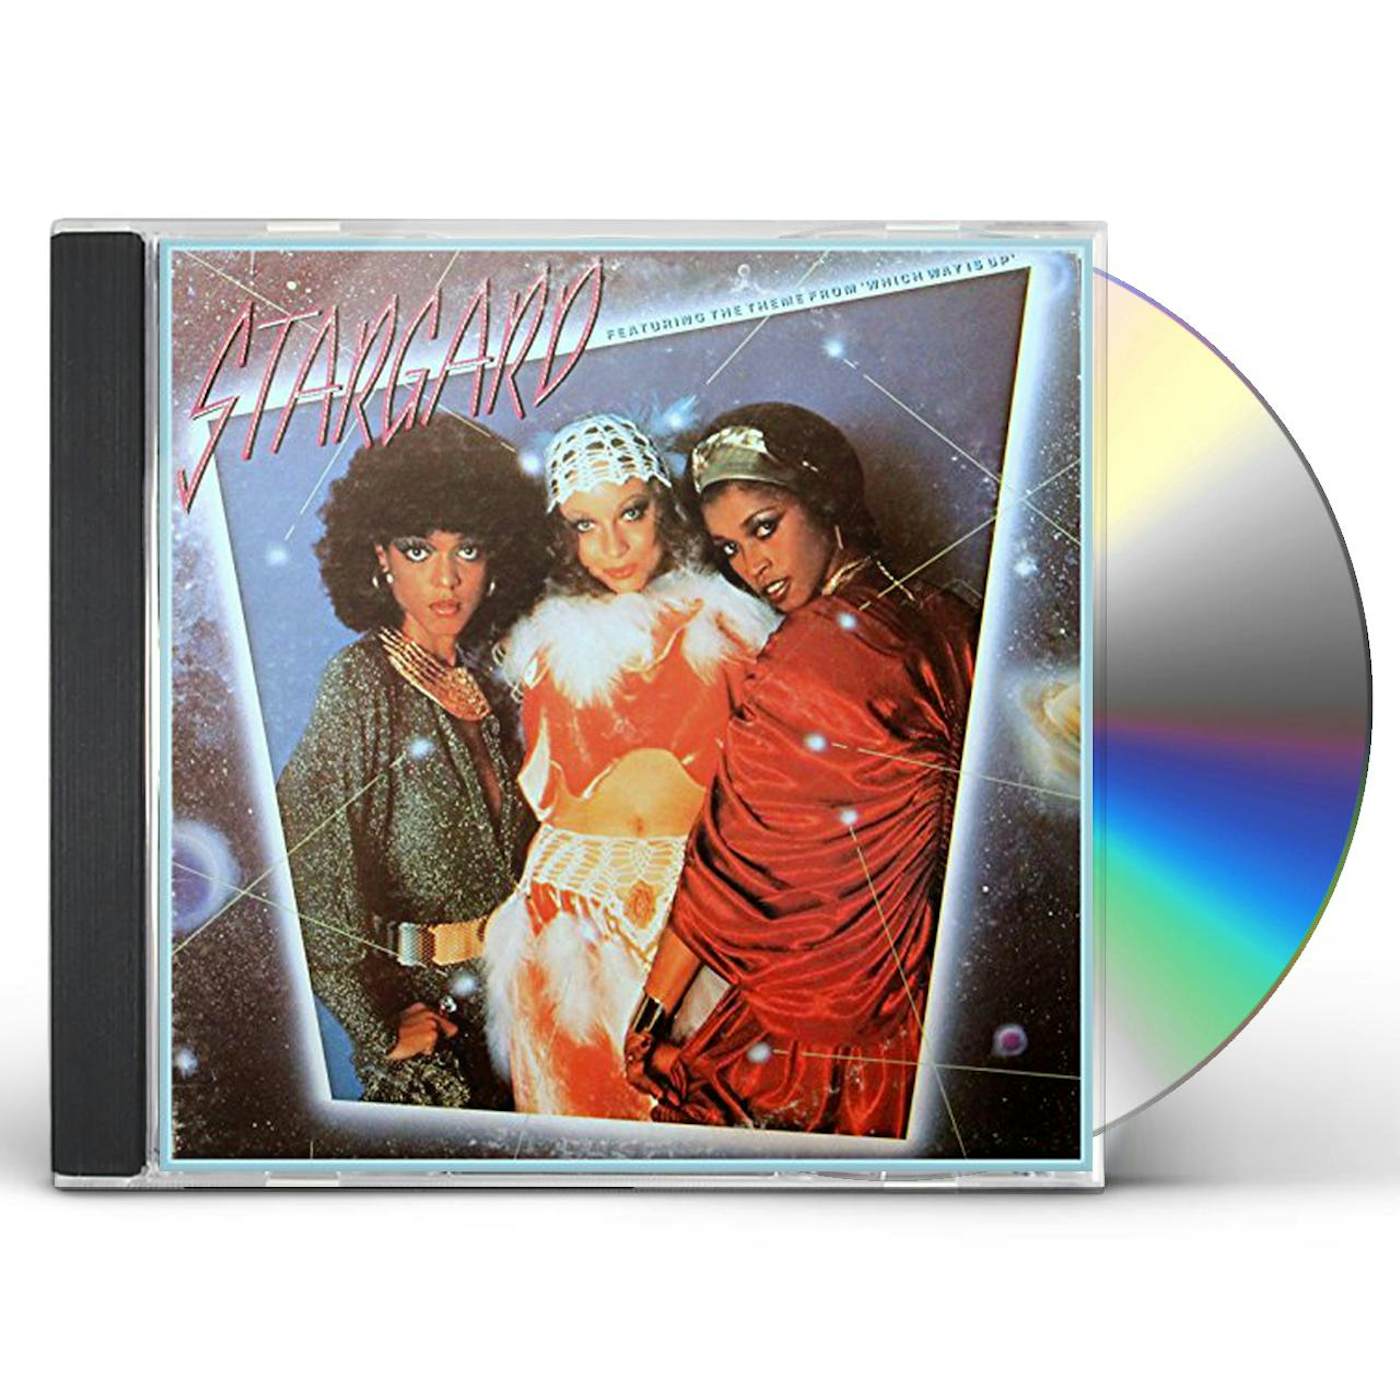 STARGARD (DISCO FEVER) CD